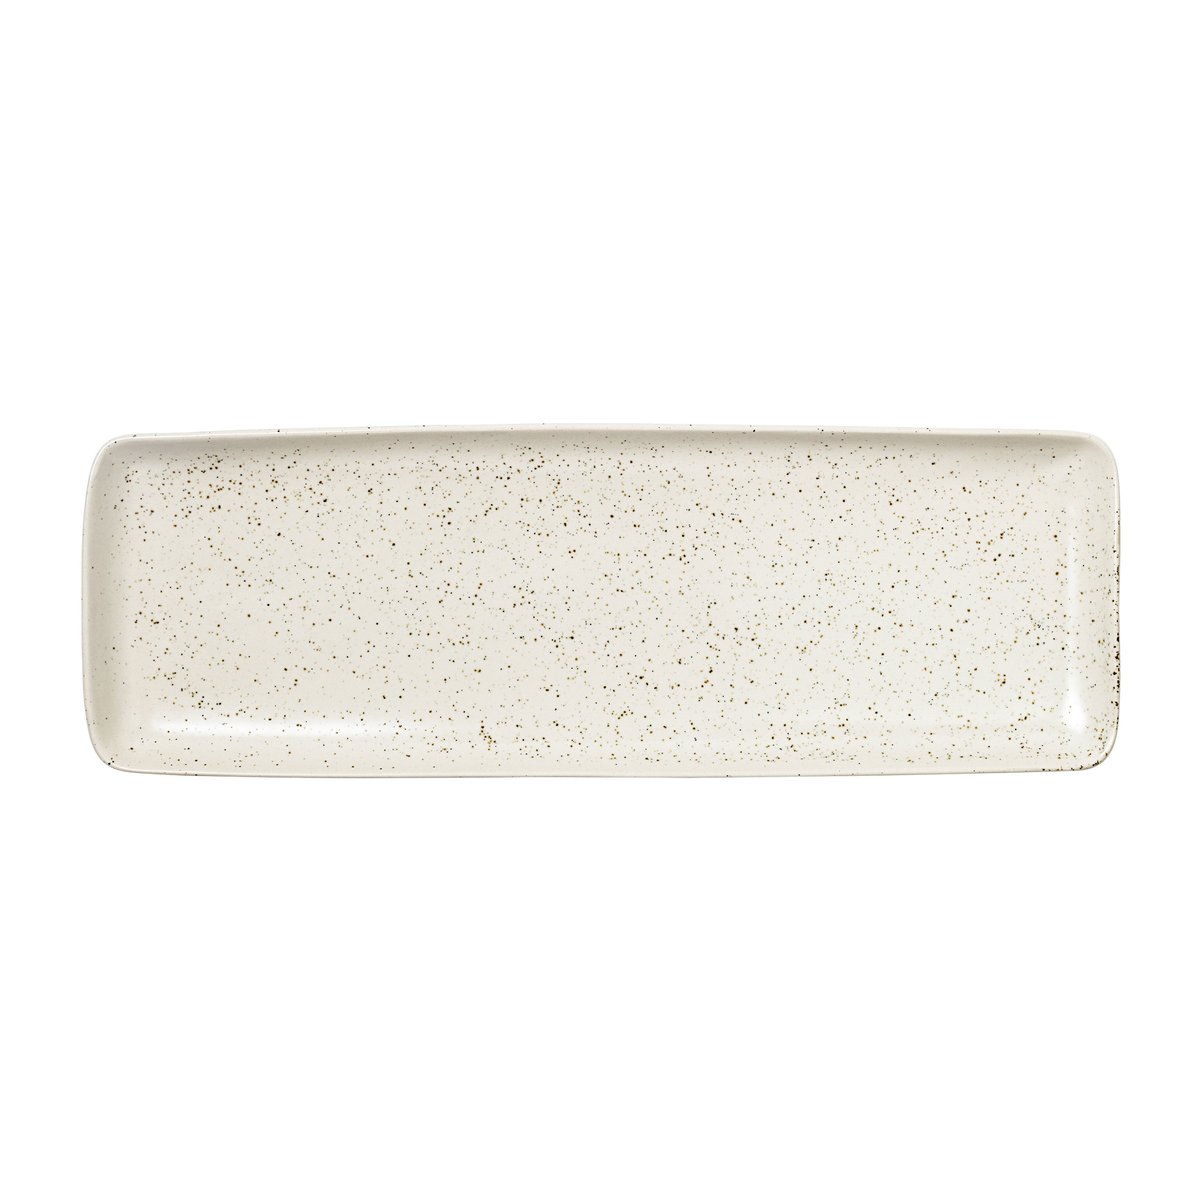 Broste Copenhagen Nordic Vanilla fad rektangulært 12,5×35 cm Cream with grains